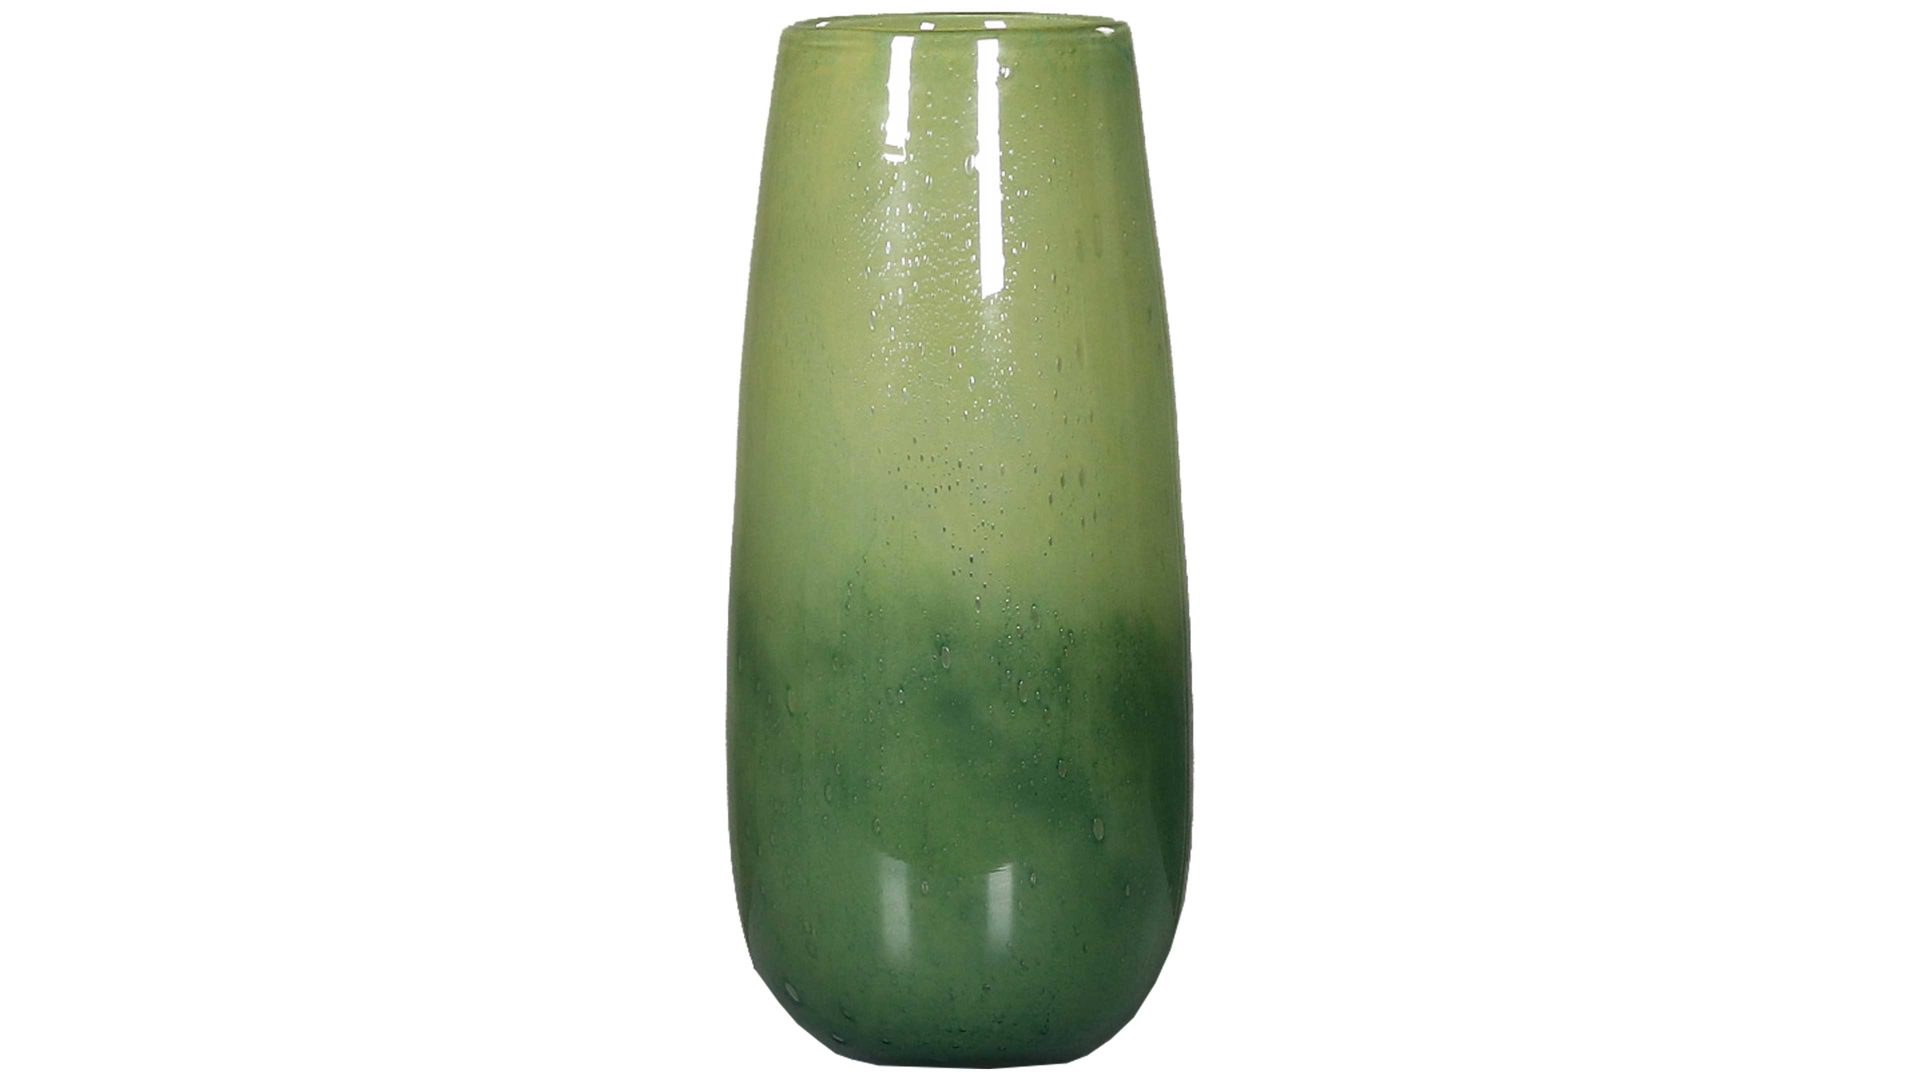 Vase Dpi aus Glas in Grün Blumenvase grünes Glas - Höhe ca. 36 cm